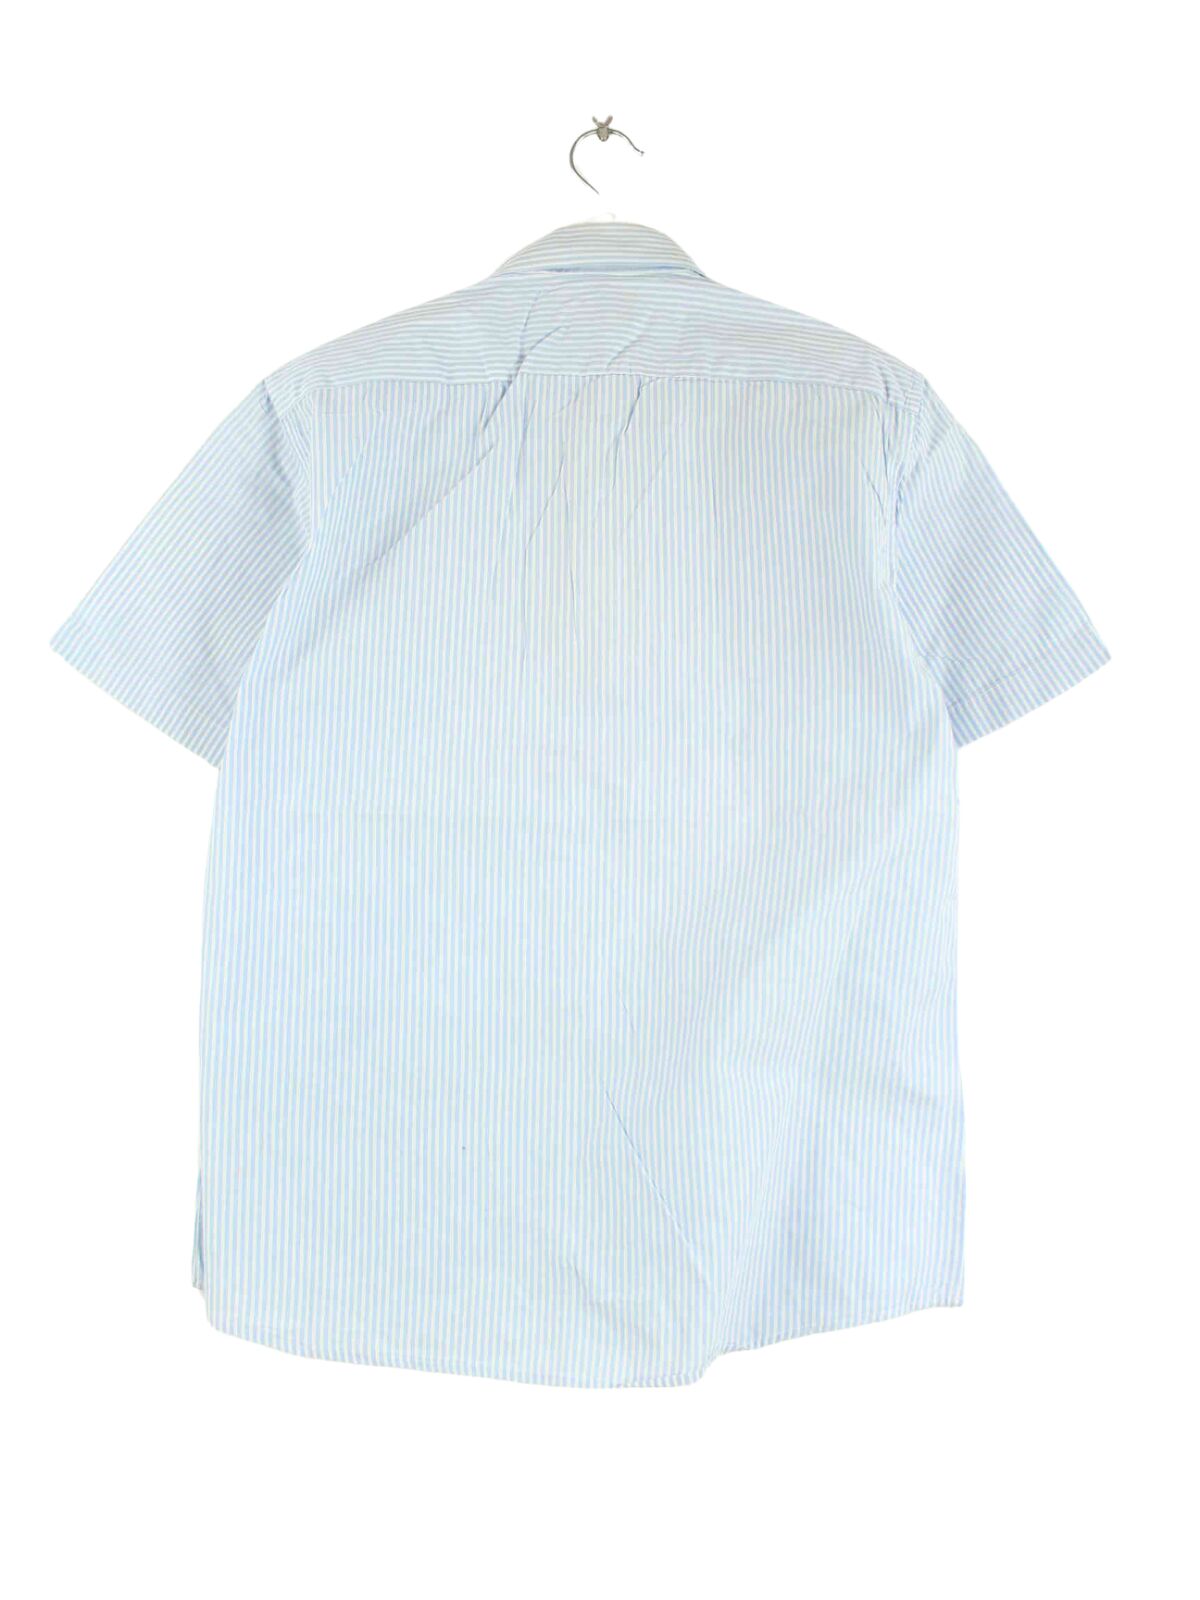 Ralph Lauren 90s Vintage Striped Hemd Blau L (back image)